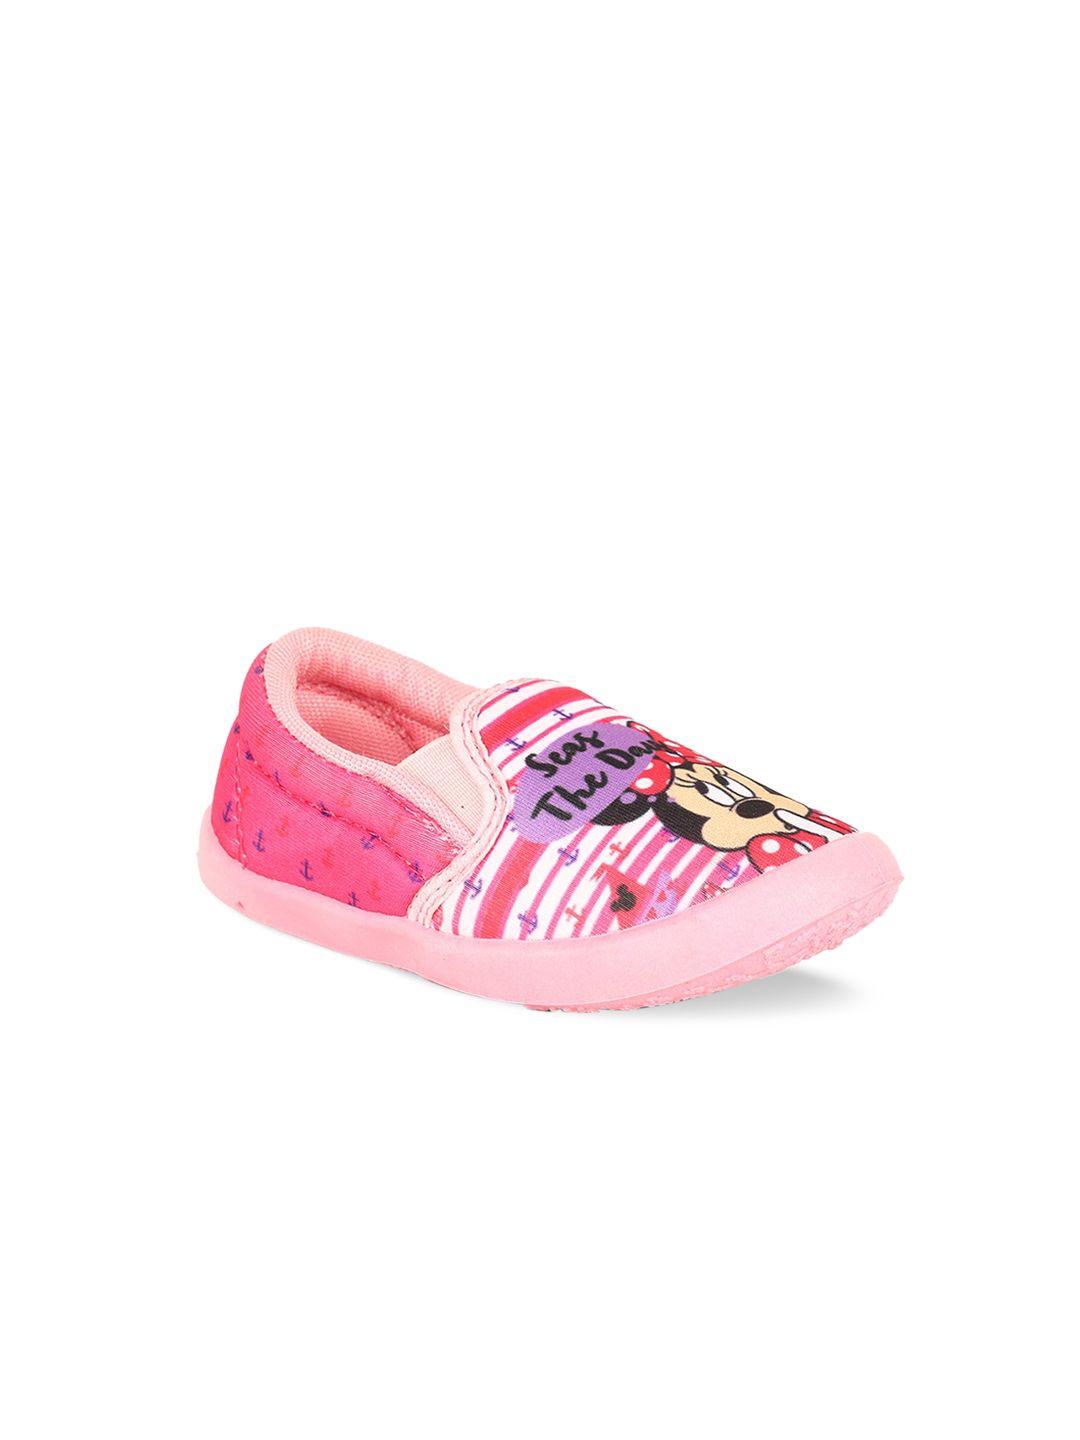 disney girls pink slip-on sneakers